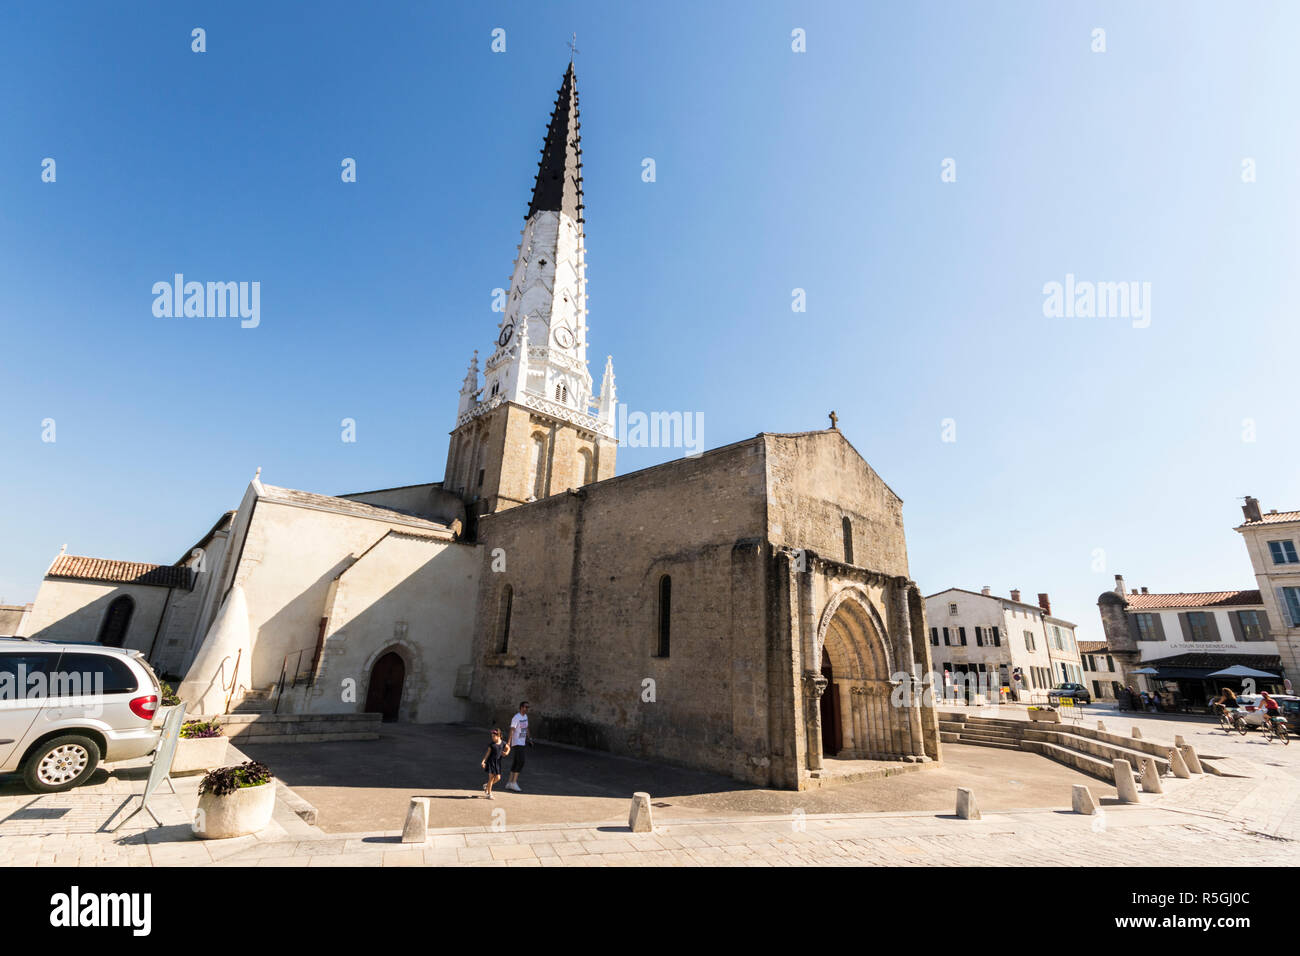 Ars-en-Re, France. L'église Saint-Etienne (Église de Saint Stephen), un temple religieux gothique dans l'île de Ré île dans l'ouest de la France Banque D'Images